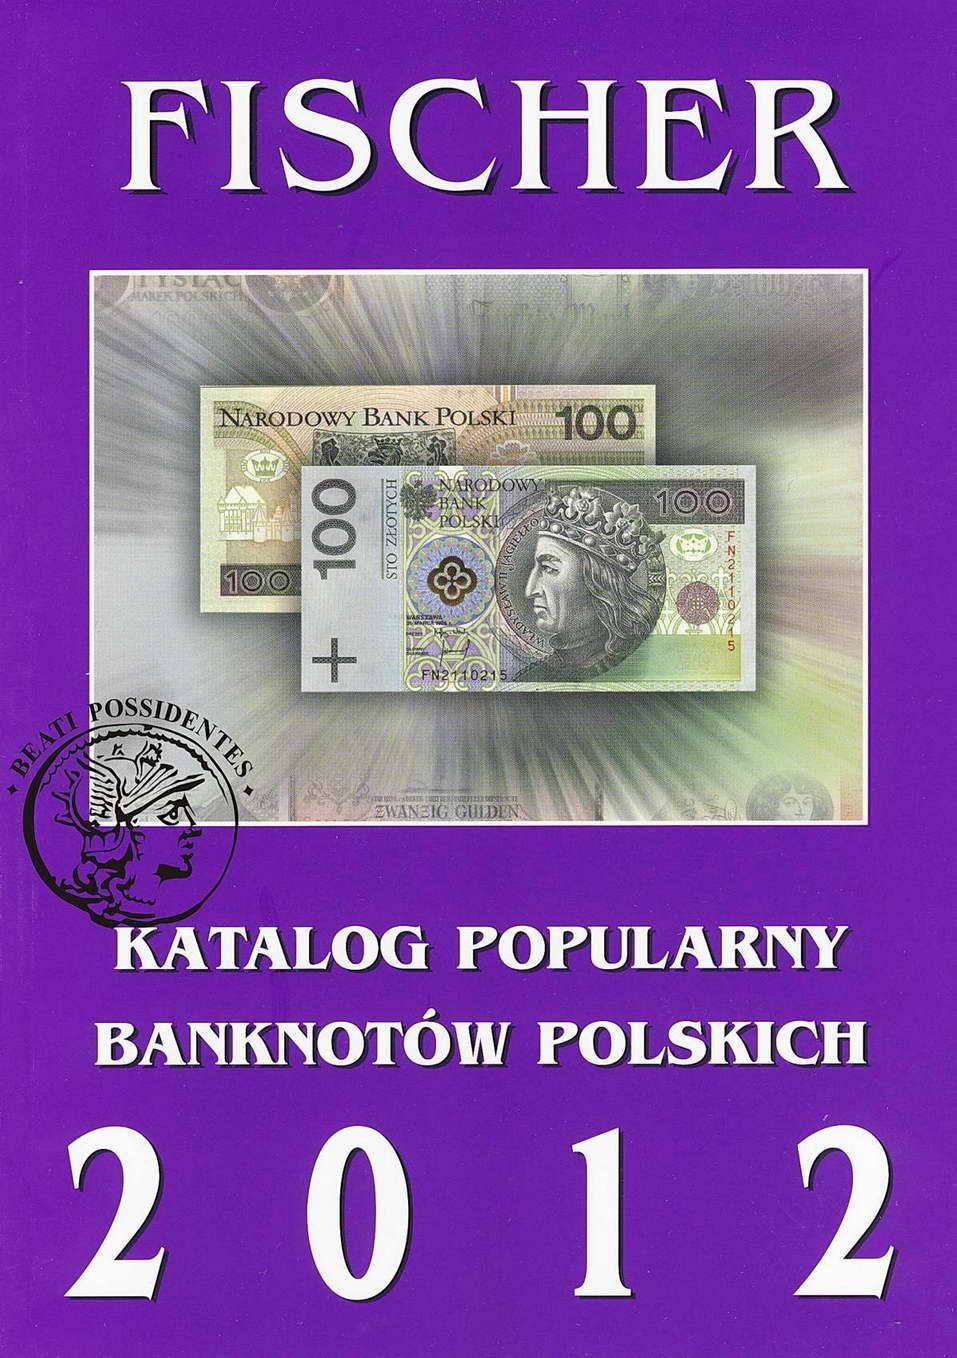 Katalog Popularny Banknotów Polskich 2012 FISCHER.